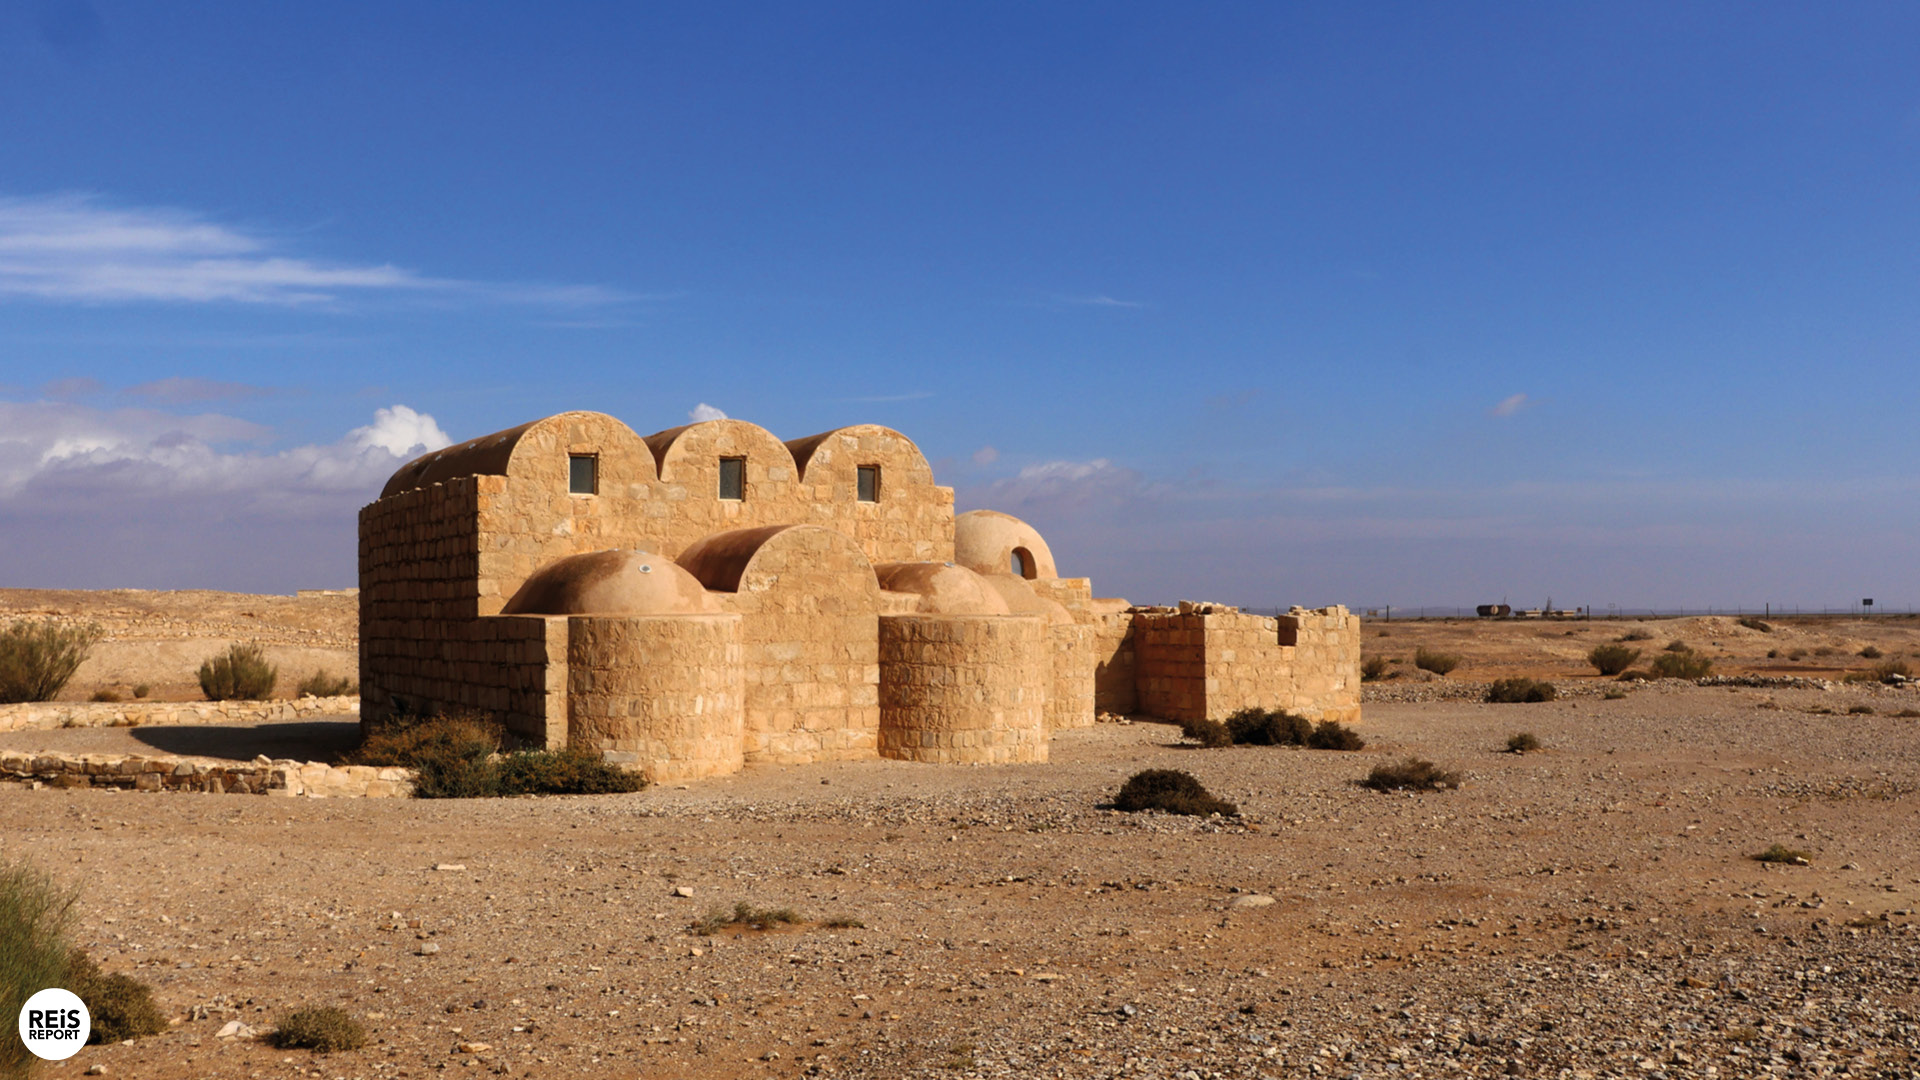 Amra kasteel jordanie